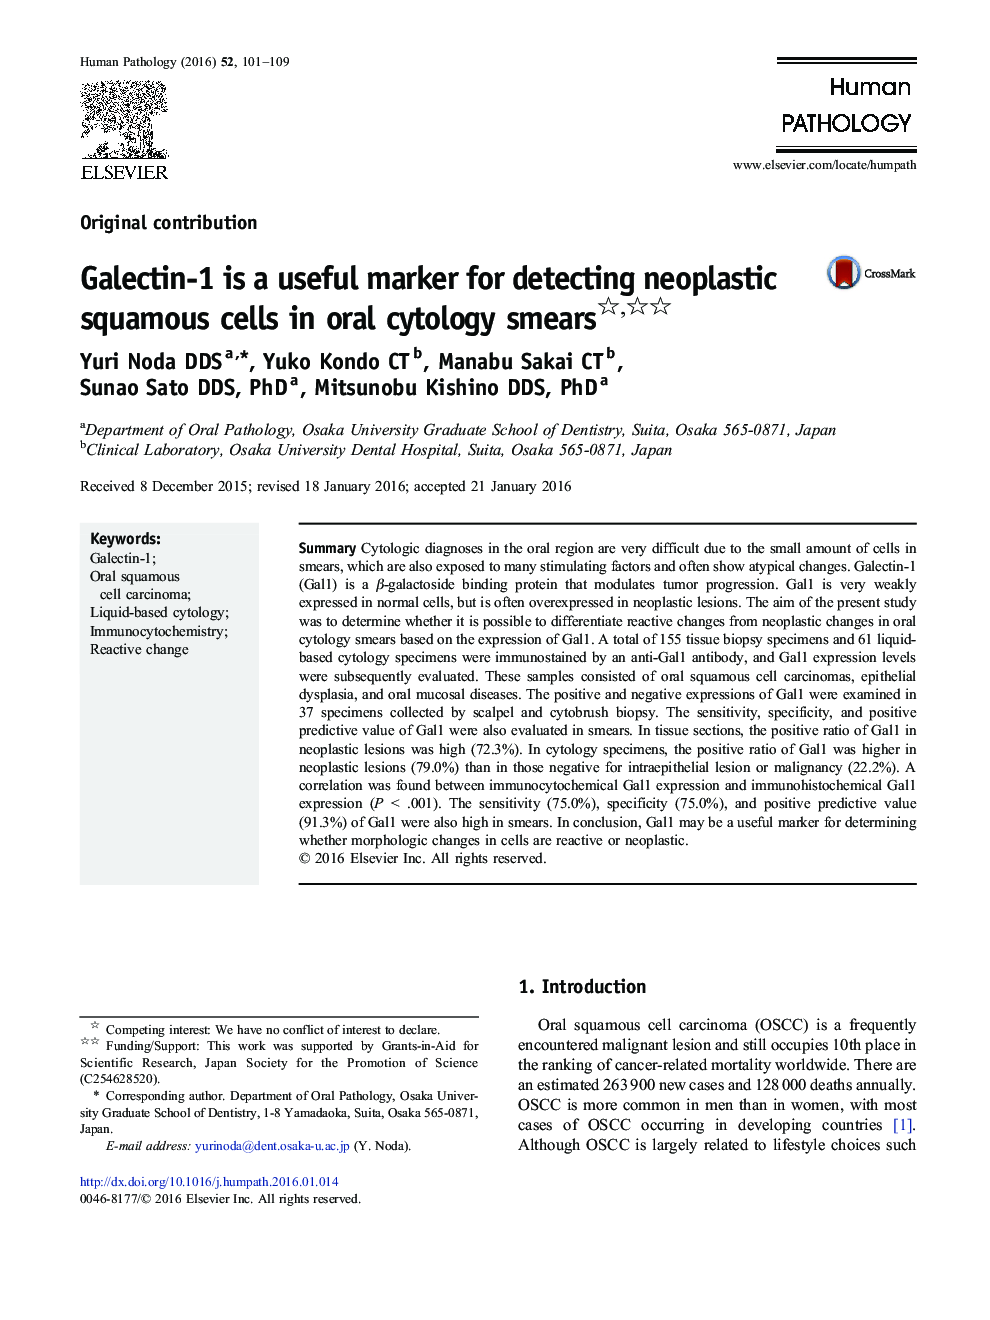 گالکتین-1 یک نشانگر مفید برای تشخیص سلول های سنگفرشی نئوپلاستی در اسمیر های سیتولوژی دهان است 